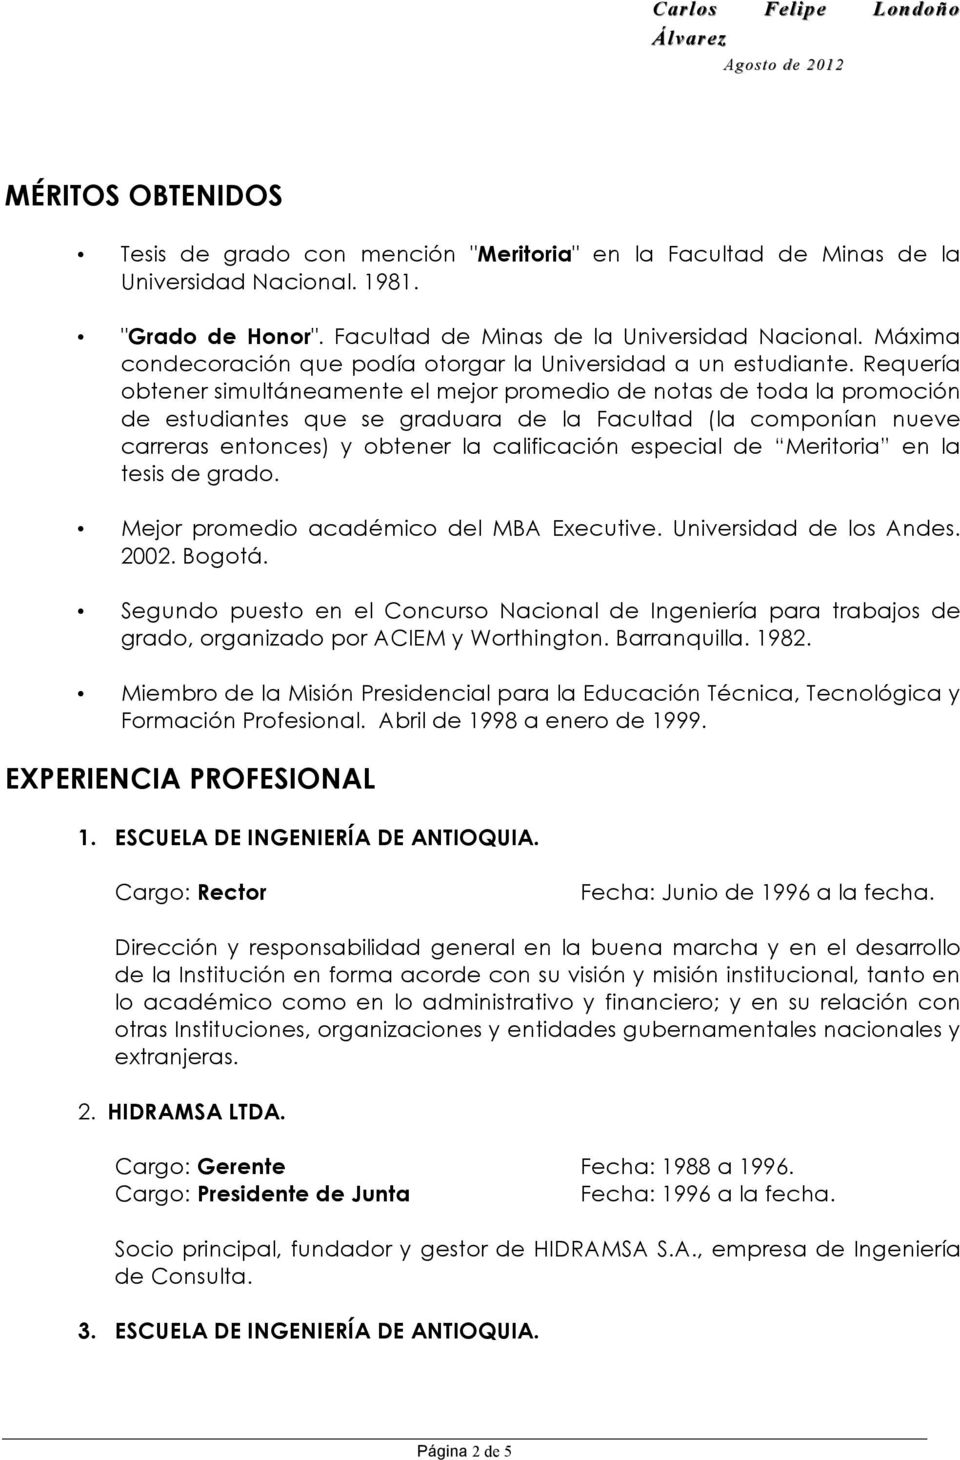 especial de Meritoria en la tesis de grado. Mejor promedio académico del MBA Executive. Universidad de los Andes. 2002. Bogotá.